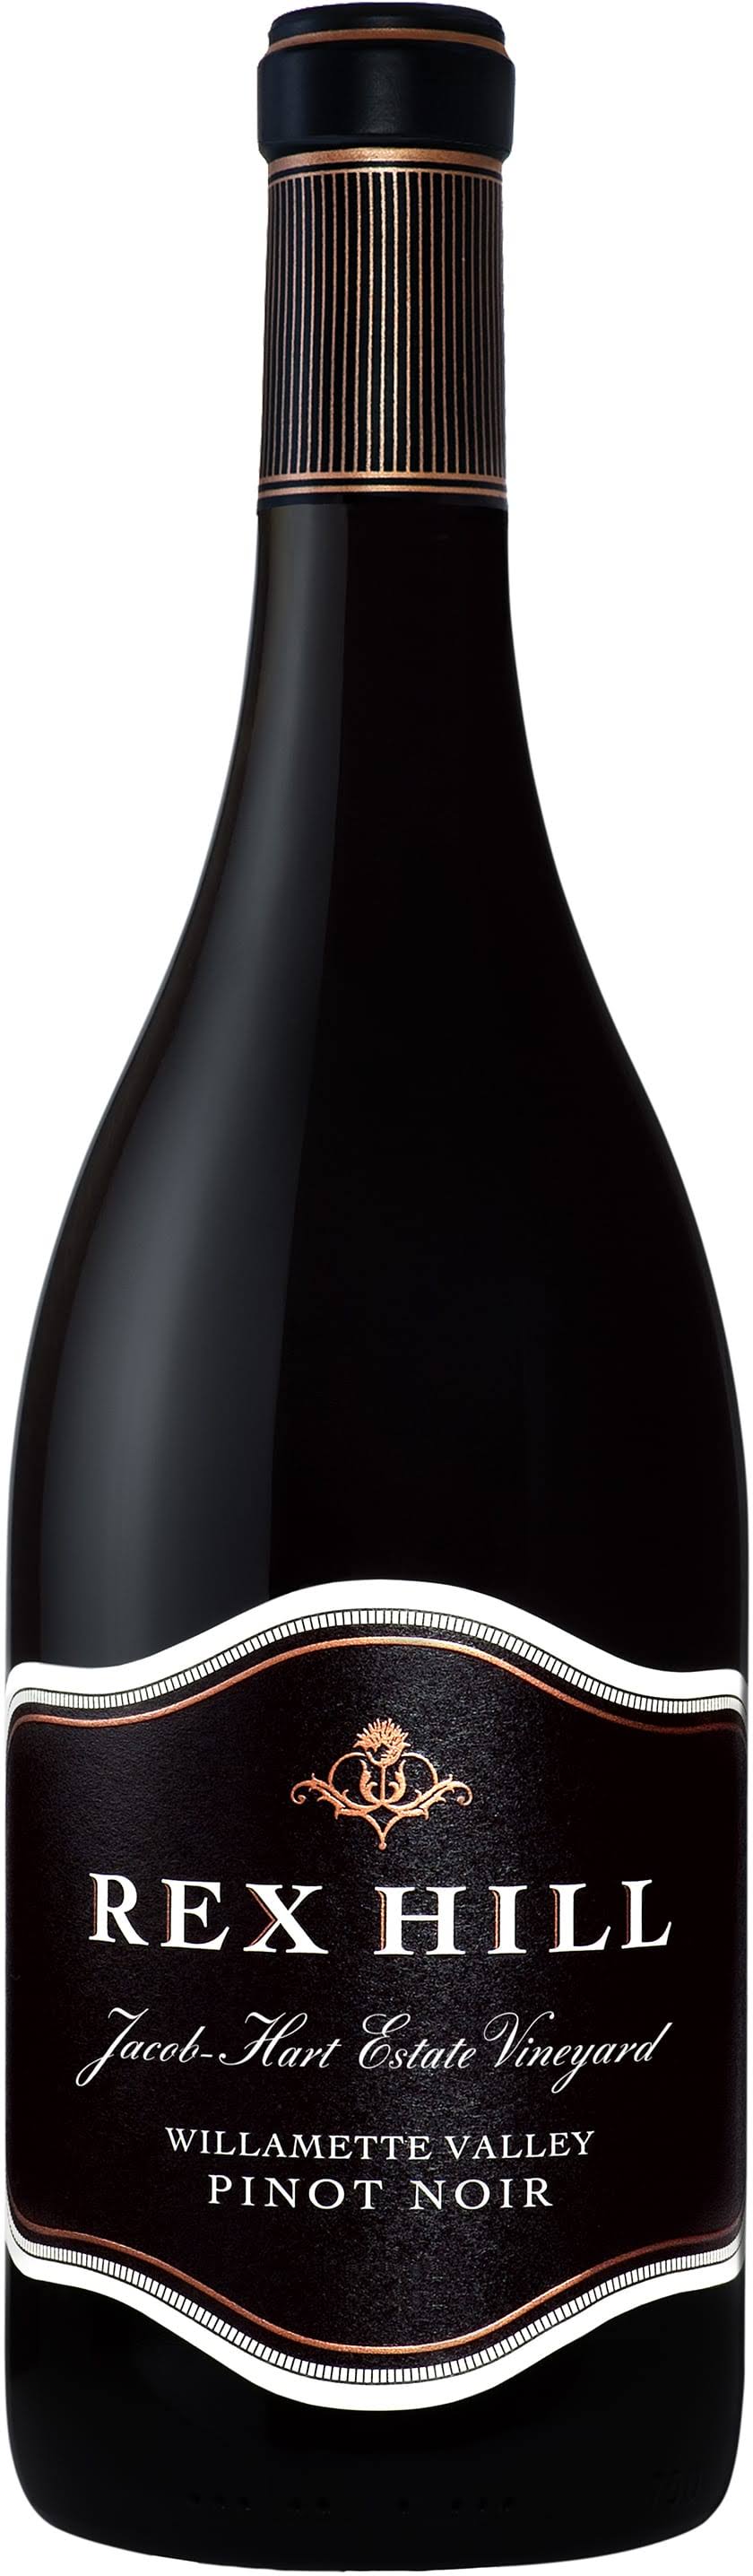 Rex Hill Jacob Hart Vineyard Pinot Noir 2013 Red Wine from Oregon - 750ml